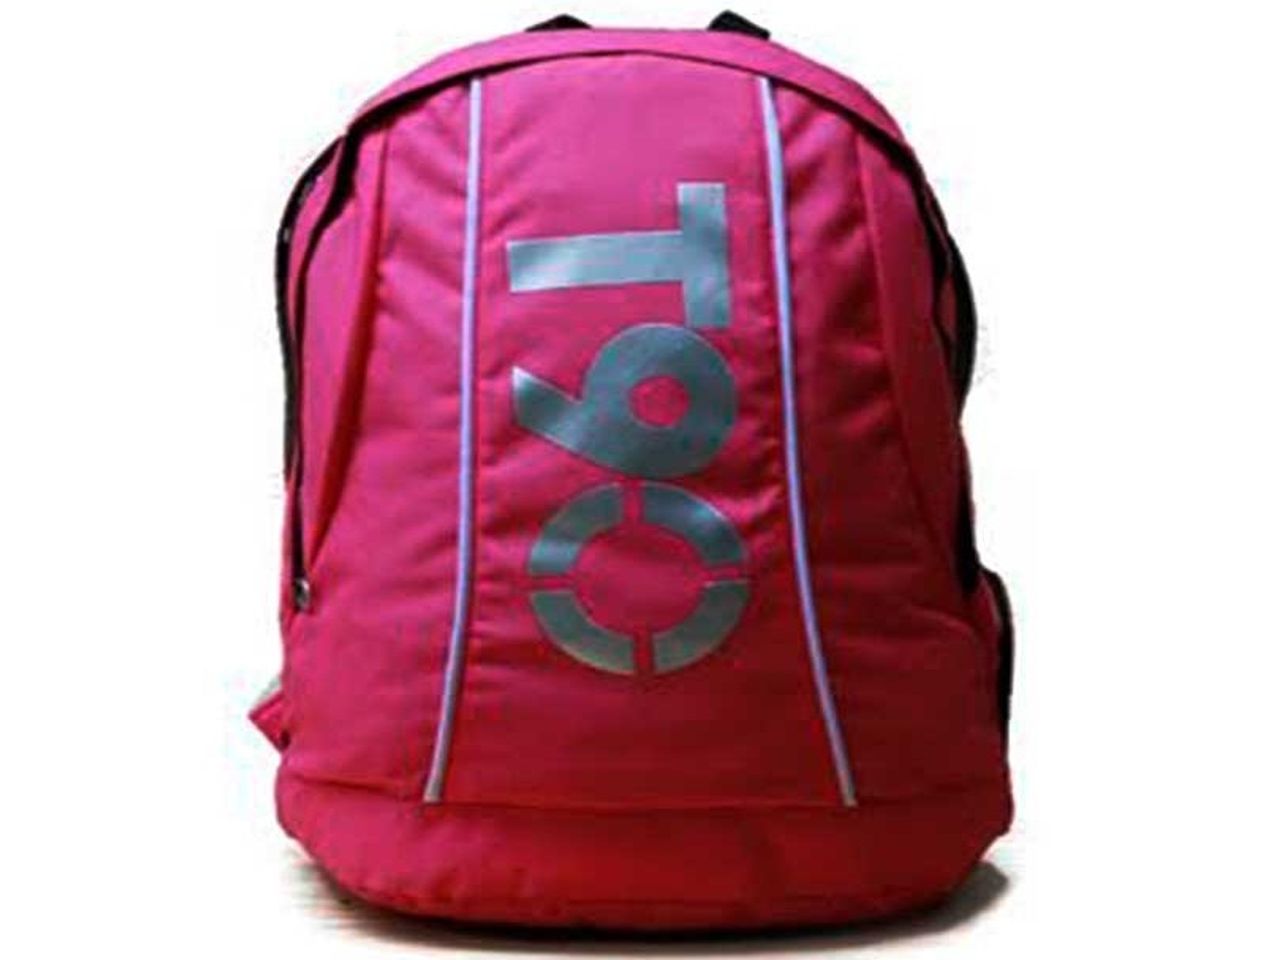 Balo thể thao Nike T90 Backpack làm từ chất liệu vải 420d chắc chắn và có độ bền cao